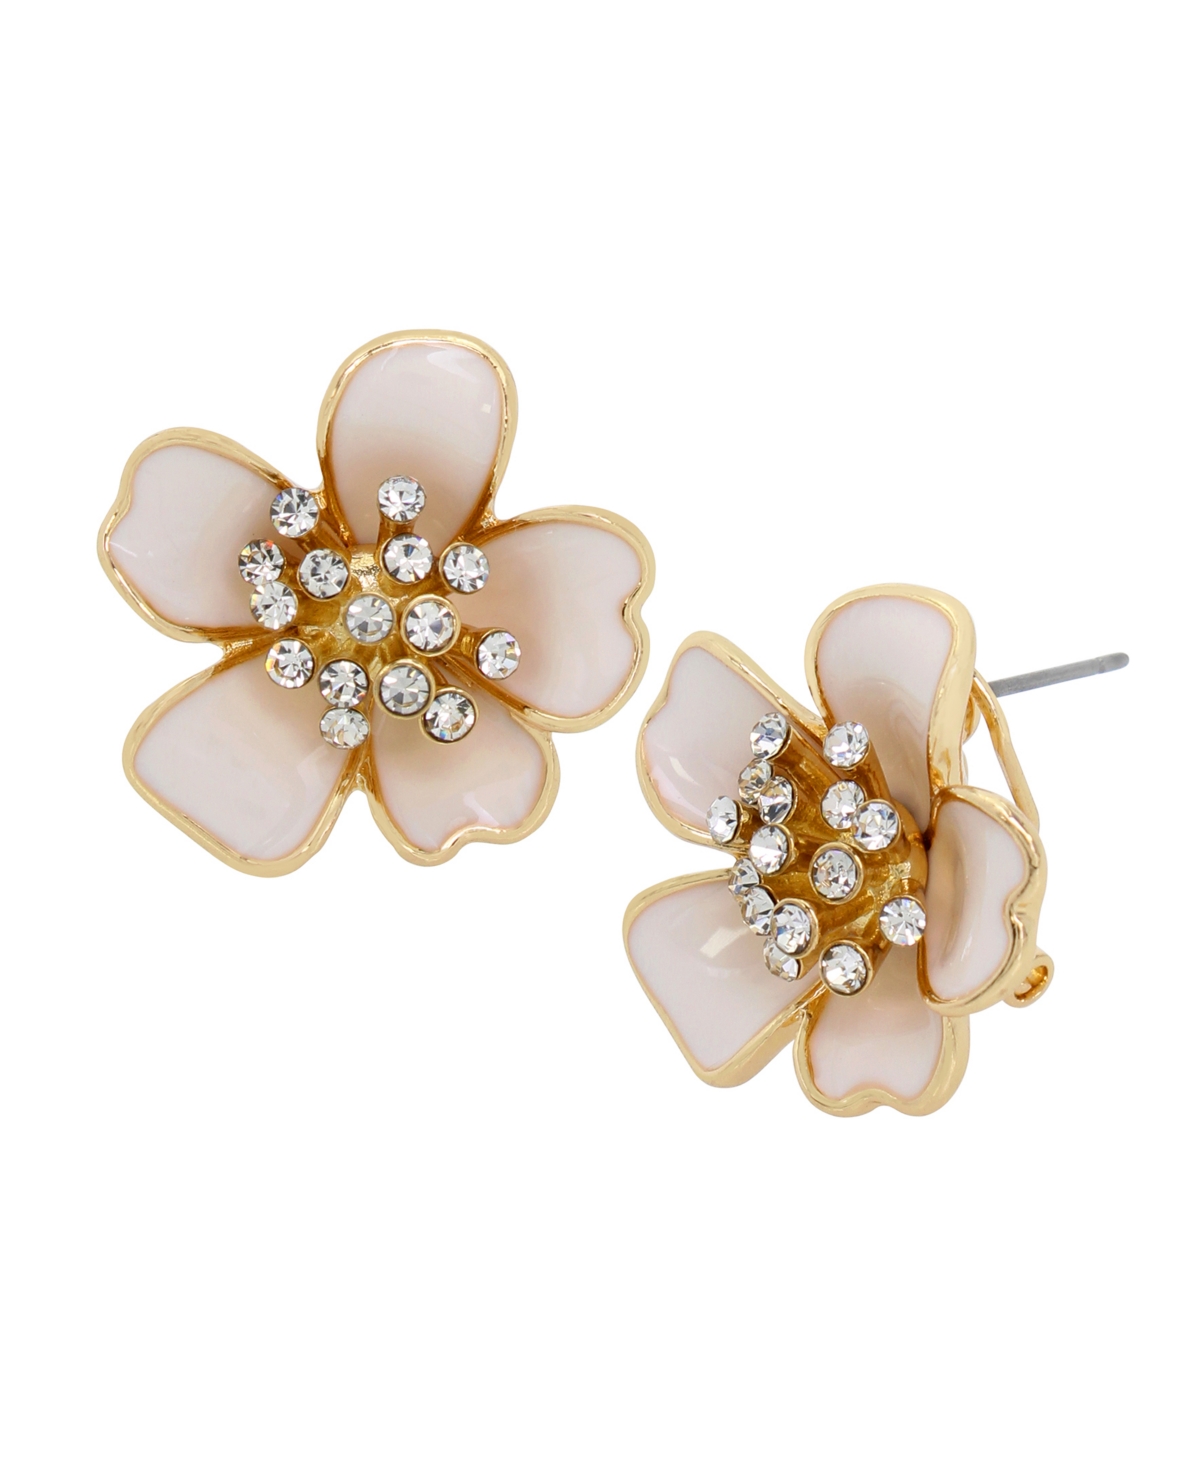 Faux Stone Flower Stud Earrings - White, Gold